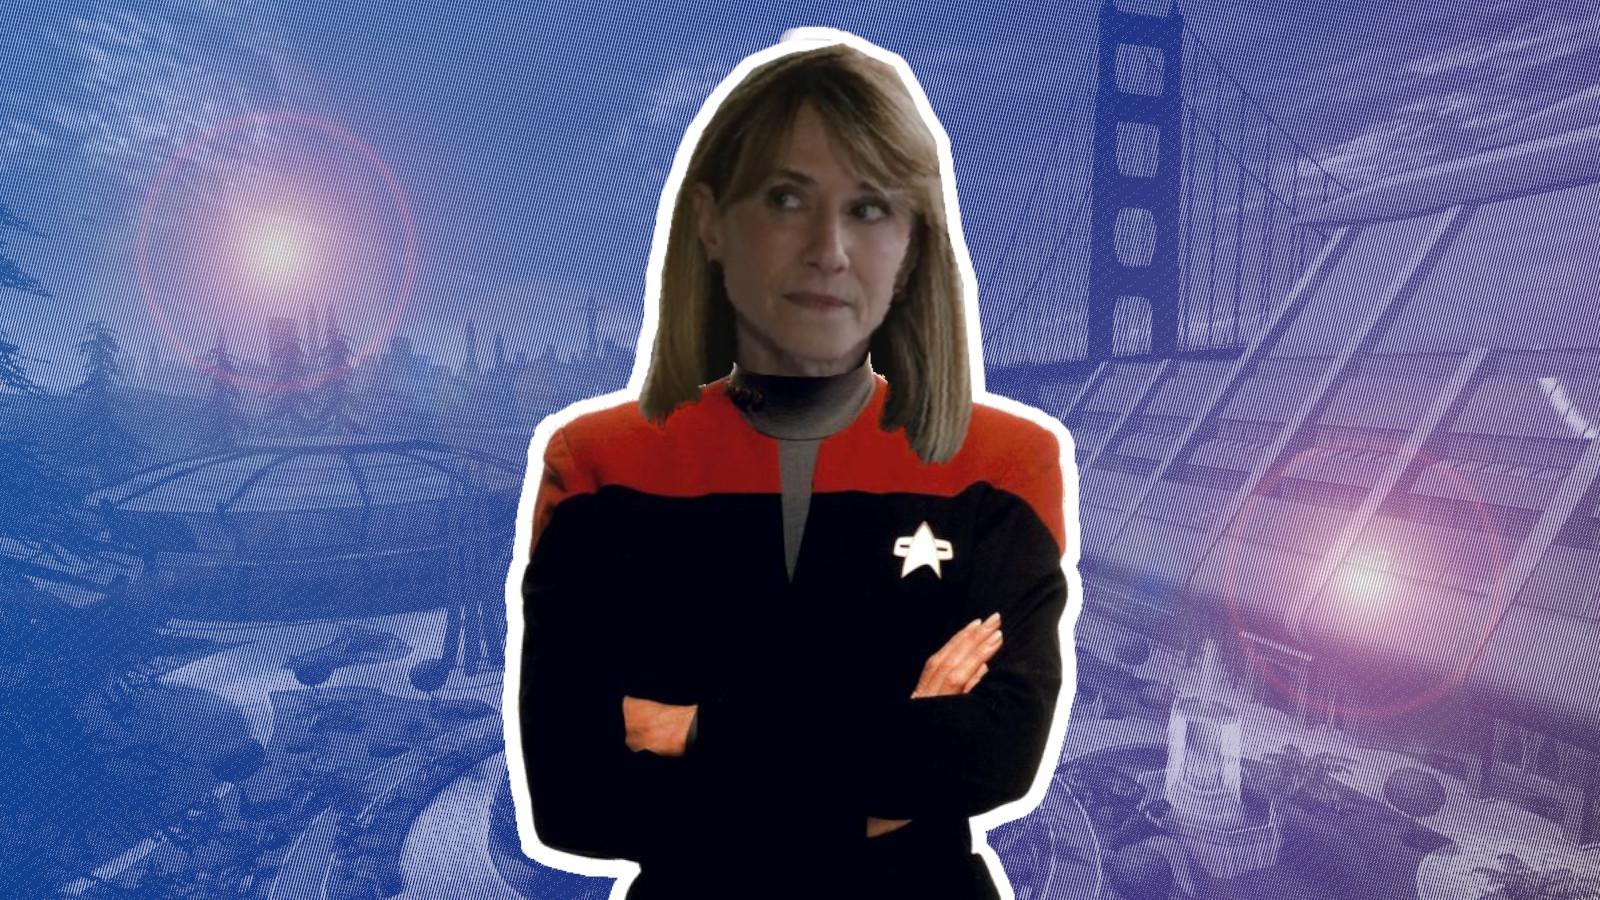 Holly Hunter in Star Trek uniform